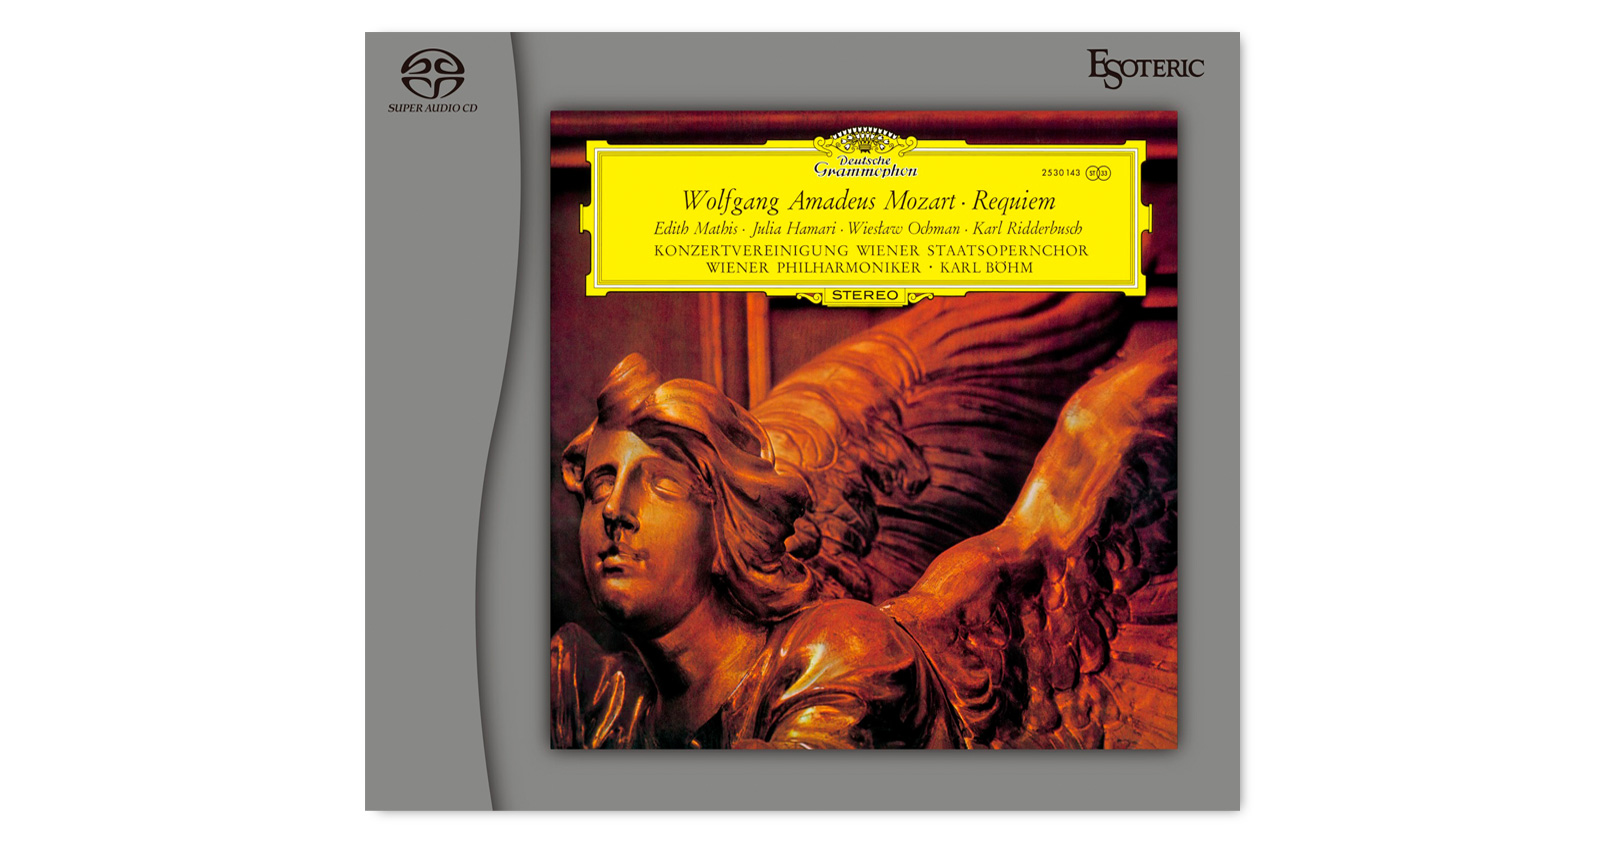 Wolfgang Amadeus Mozart: Requiem, Karl Böhm/Wiener Philharmoniker, Chor der Wiener Staatsoper - Hybrid SACD, Limited, Esoteric Mastering, Cat# ESSG-90269,  EAN 4907034224708